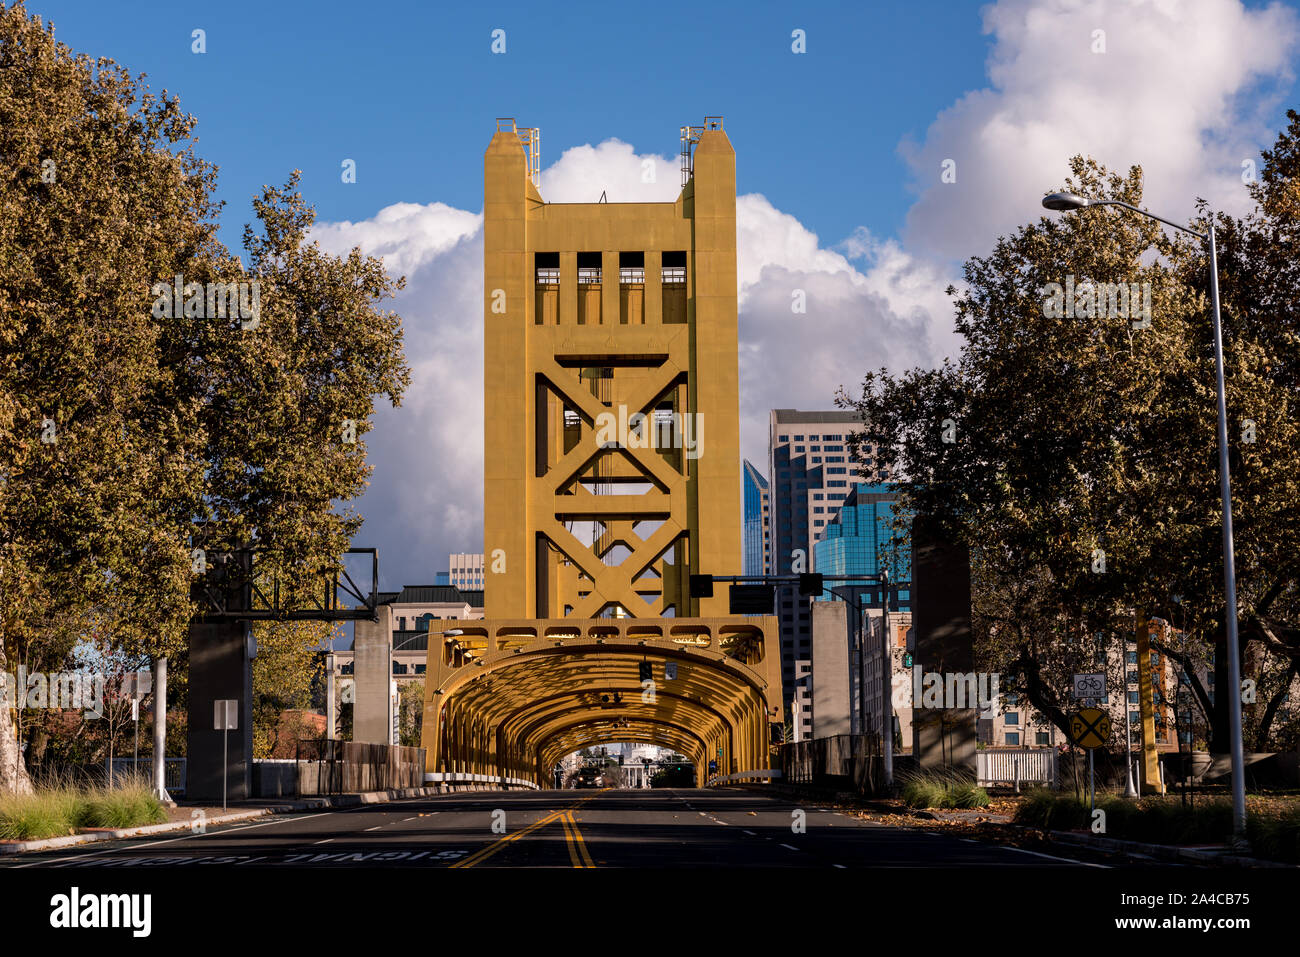 Le Tower Bridge est un pont de levage vertical de l'autre côté de la rivière Sacramento, reliant West Sacramento dans Yolo comté à l'ouest, avec la capitale de la Californie, Sacramento, dans le comté de Sacramento à l'Est Banque D'Images